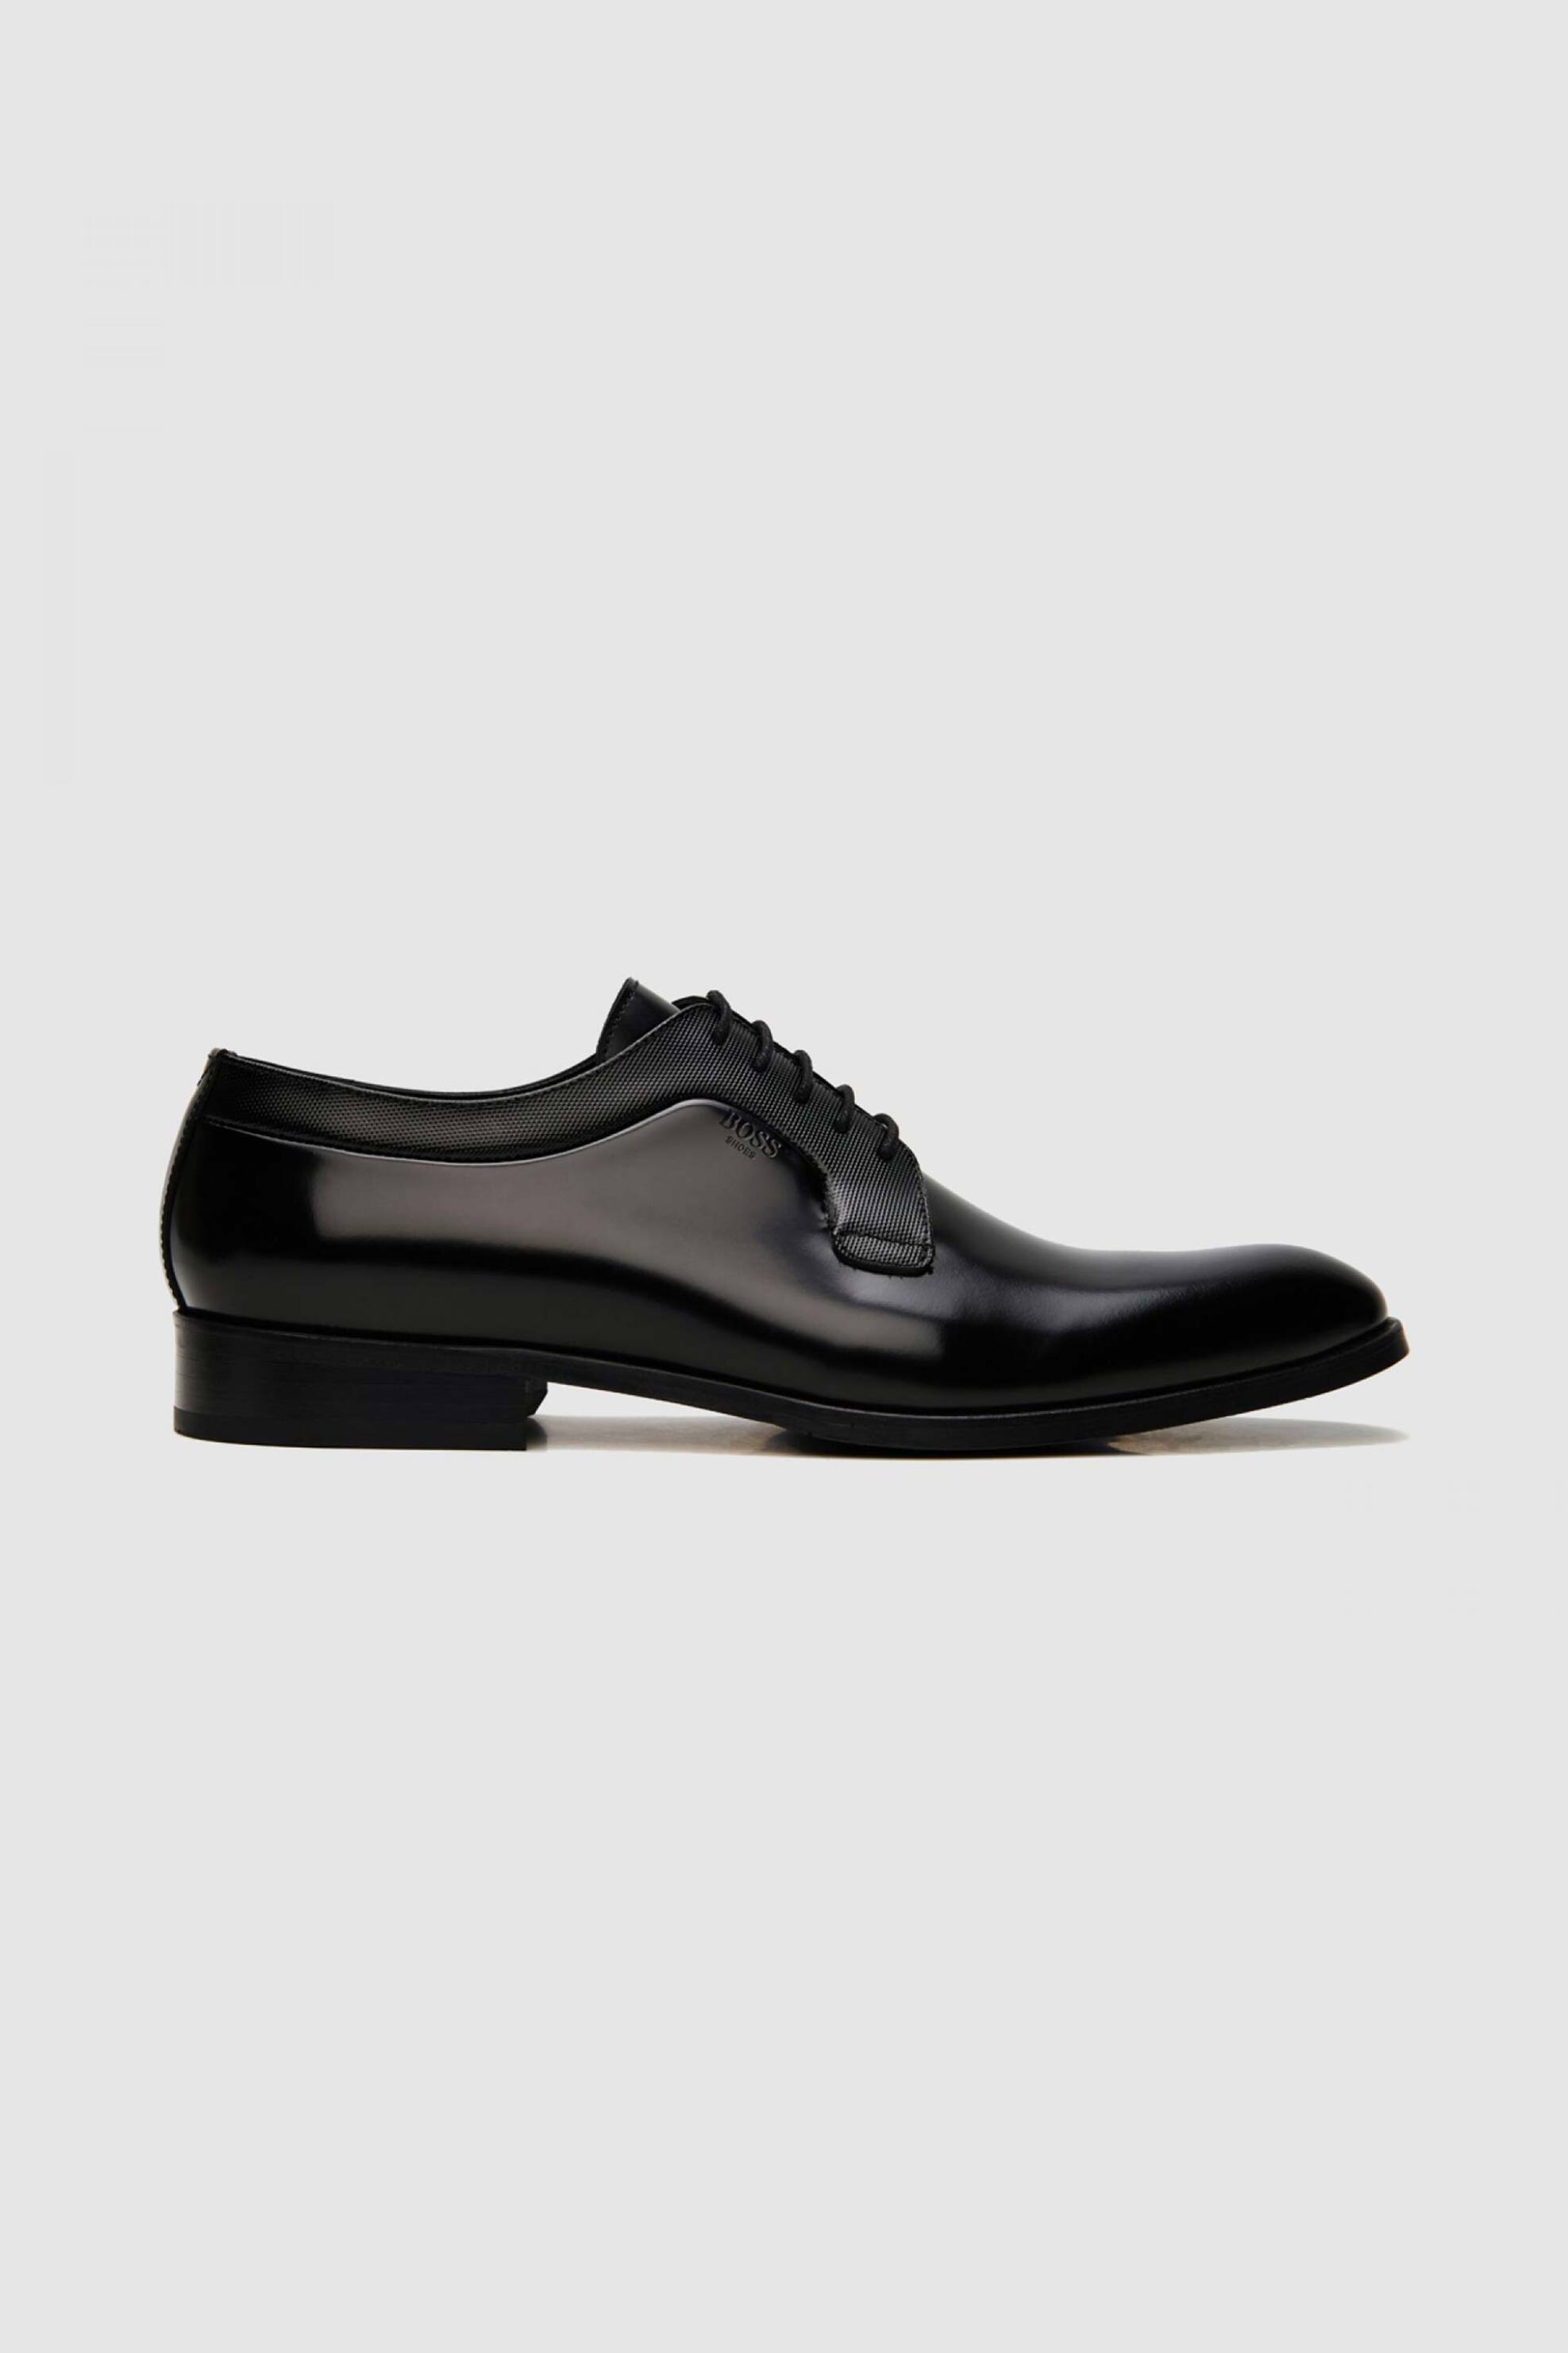 Ανδρική Μόδα > Ανδρικά Παπούτσια > Ανδρικά Σκαρπίνια & Παπούτσια Oxford Boss Shoes ανδρικά δερμάτινα παπούτσια oxford μονόχρωμα με ανάγλυφο logo - Z7521 SPAZZ Μαύρο